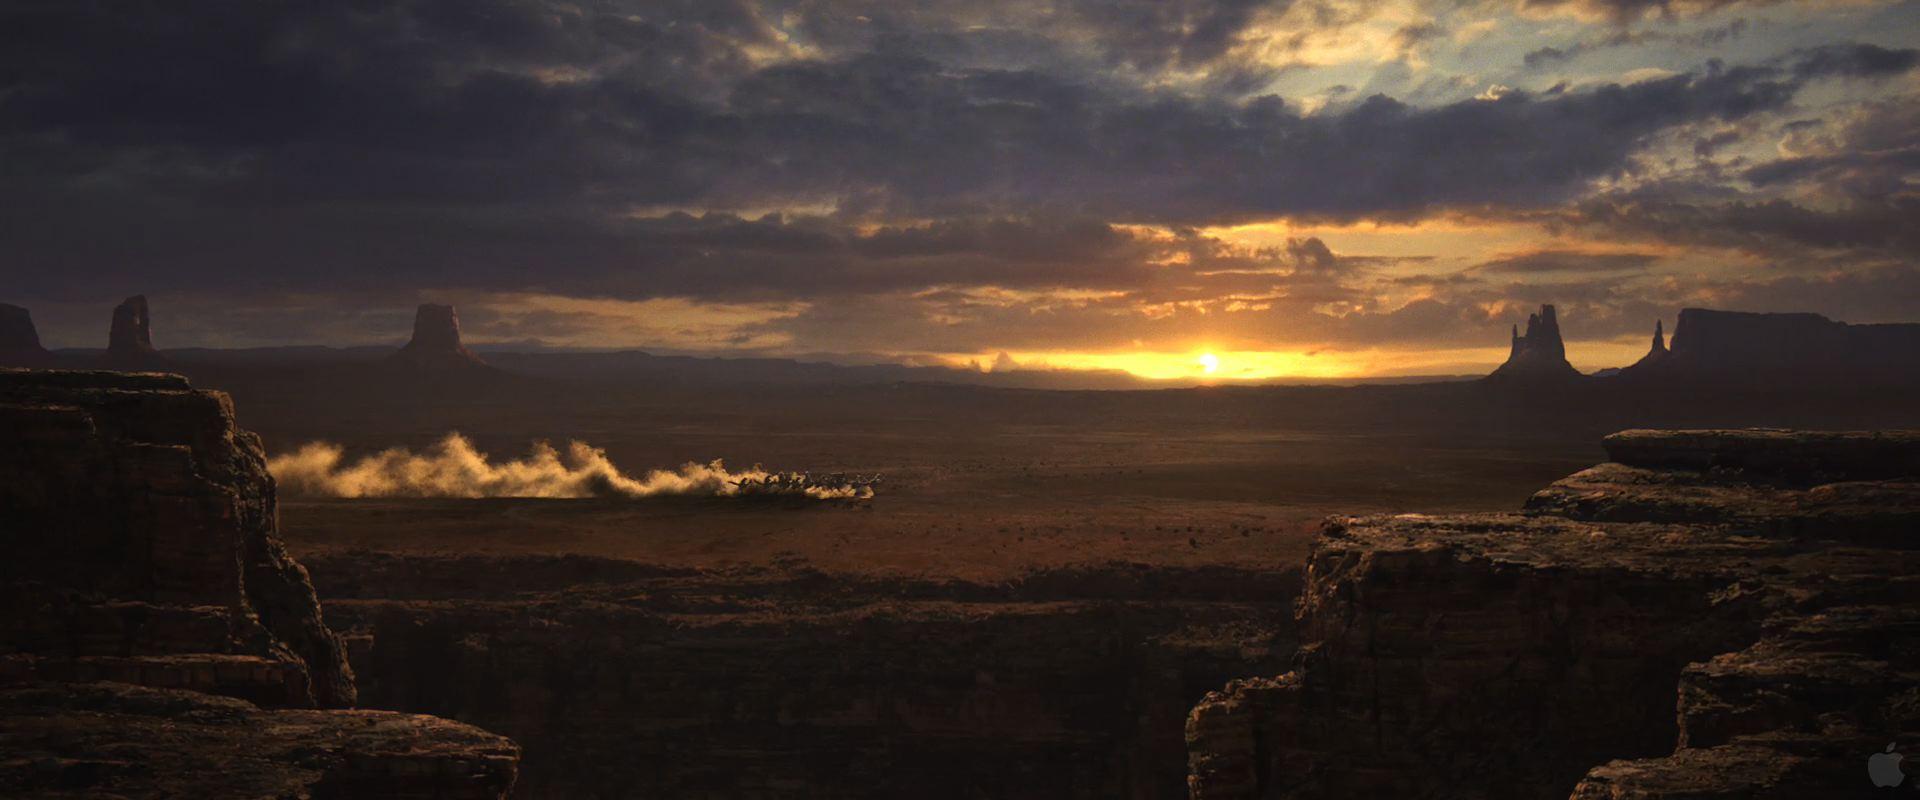 Desert Sunset from Rango Desktop Wallpaper